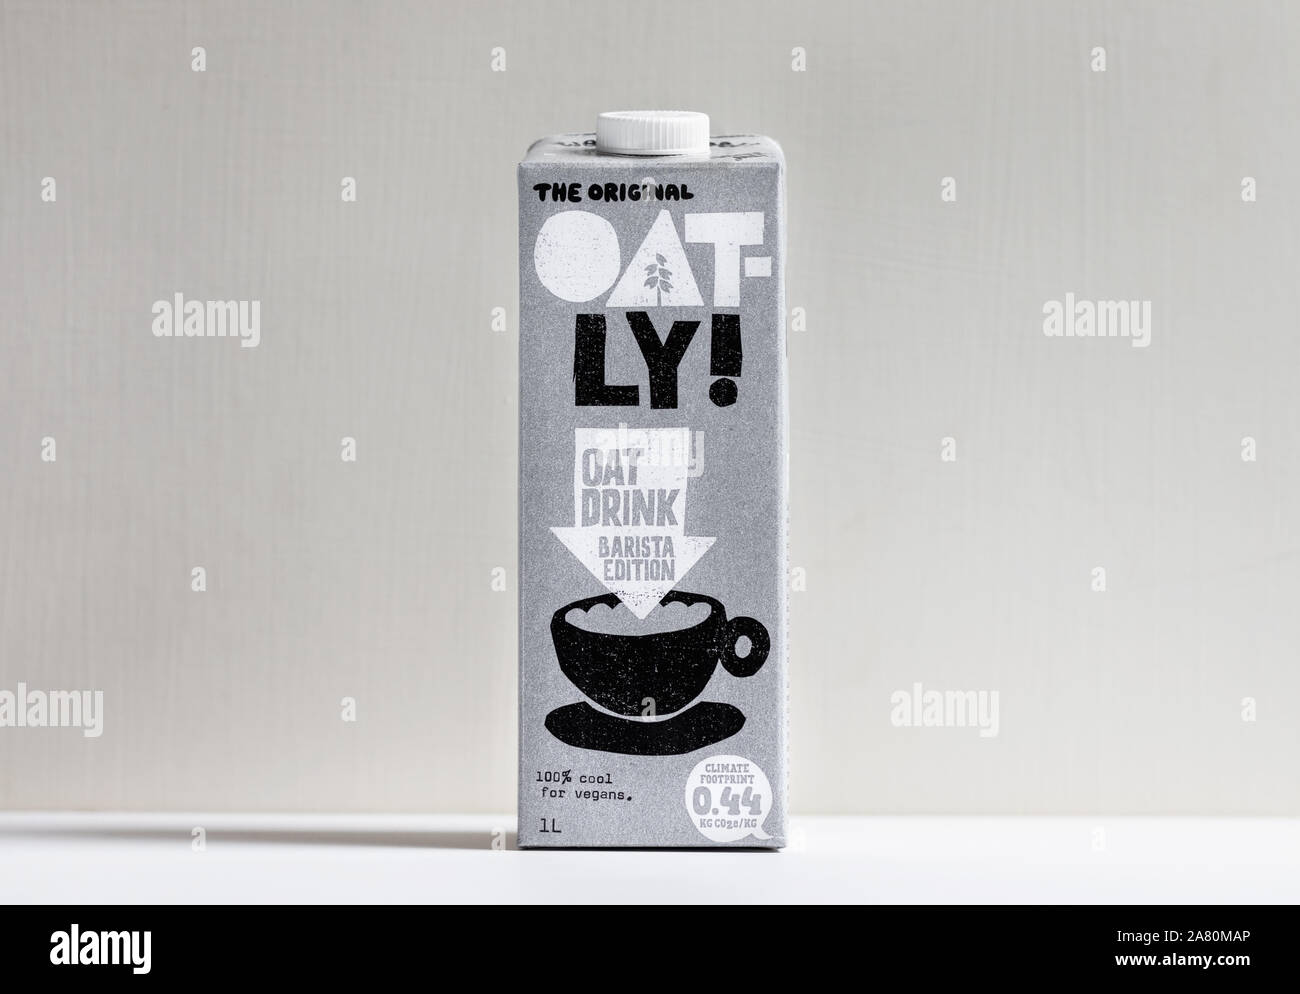 London / UK - 3 Novembre 2019 - Oatly cartone di latte in piedi su un tavolo bianco. Oatly è una latteria libero latte vegano alternativa. Foto Stock